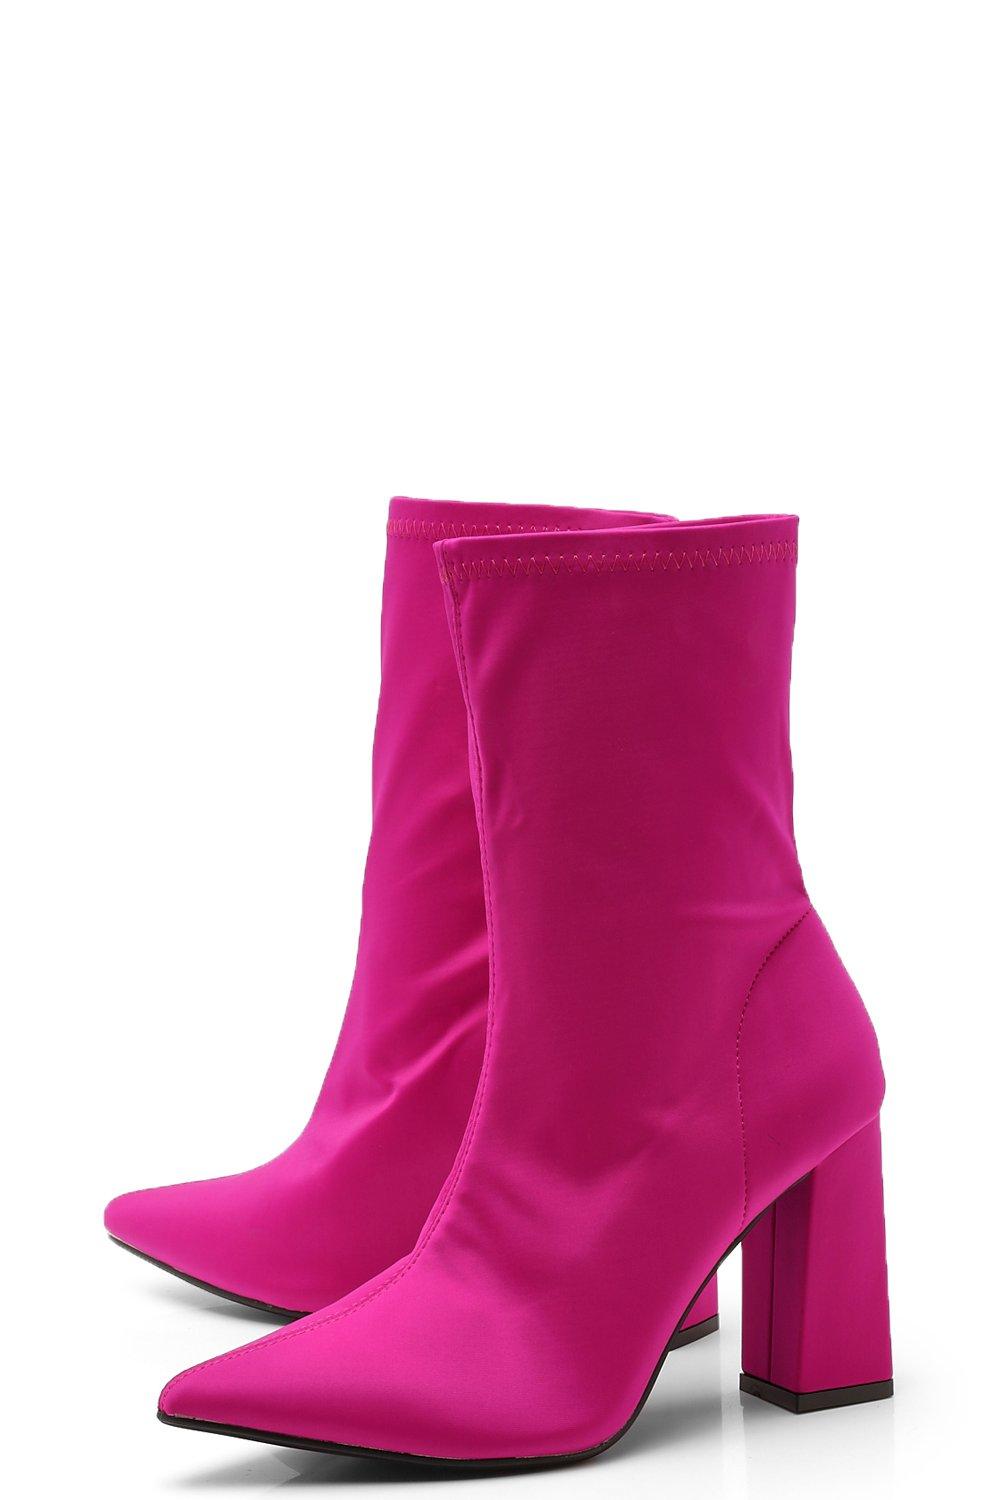 hot pink block heels